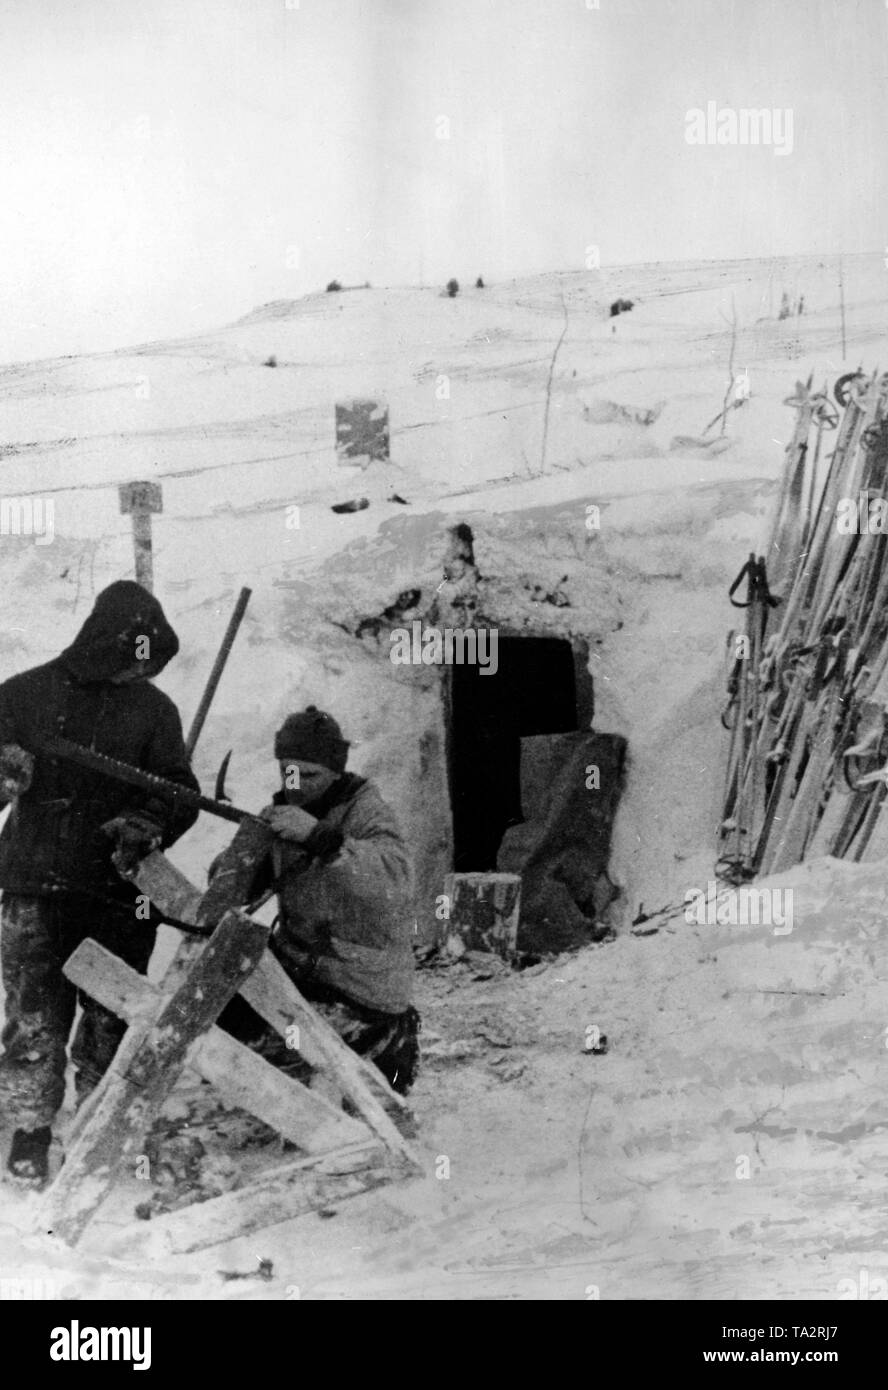 Deux militaires avaient vu la montagne en face du bois de leur bunker recouvert de neige . Photo de l'entreprise de propagande (PK) : correspondant de guerre Reitzner. Banque D'Images